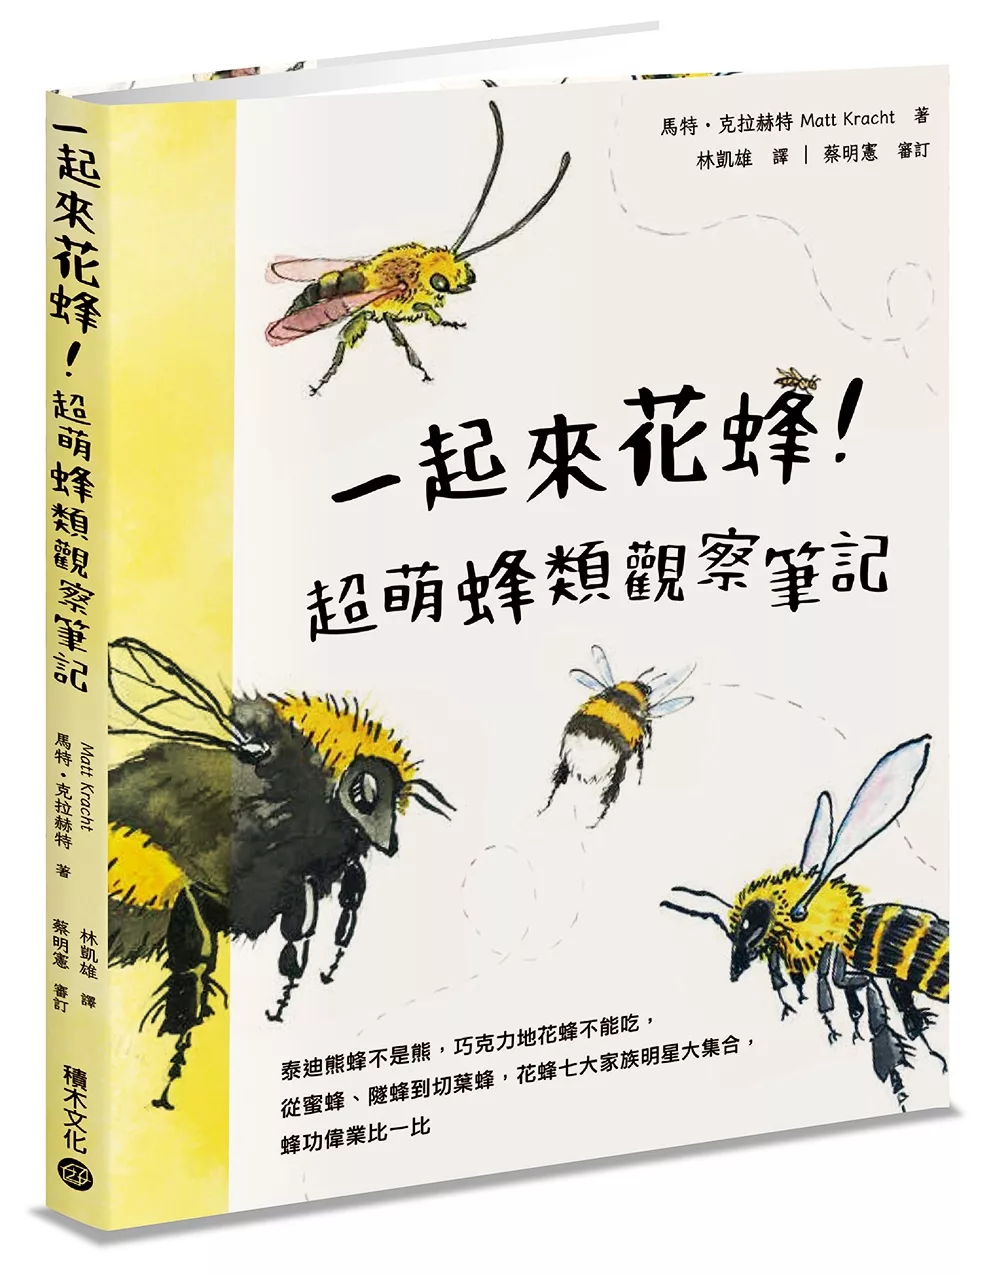 一起來花蜂!超萌蜂類觀察筆記：泰迪熊蜂不是熊，巧克力地花蜂不能吃，從蜜蜂、隧蜂到切葉蜂，花蜂七大家族明星大集合，蜂功偉業比一比